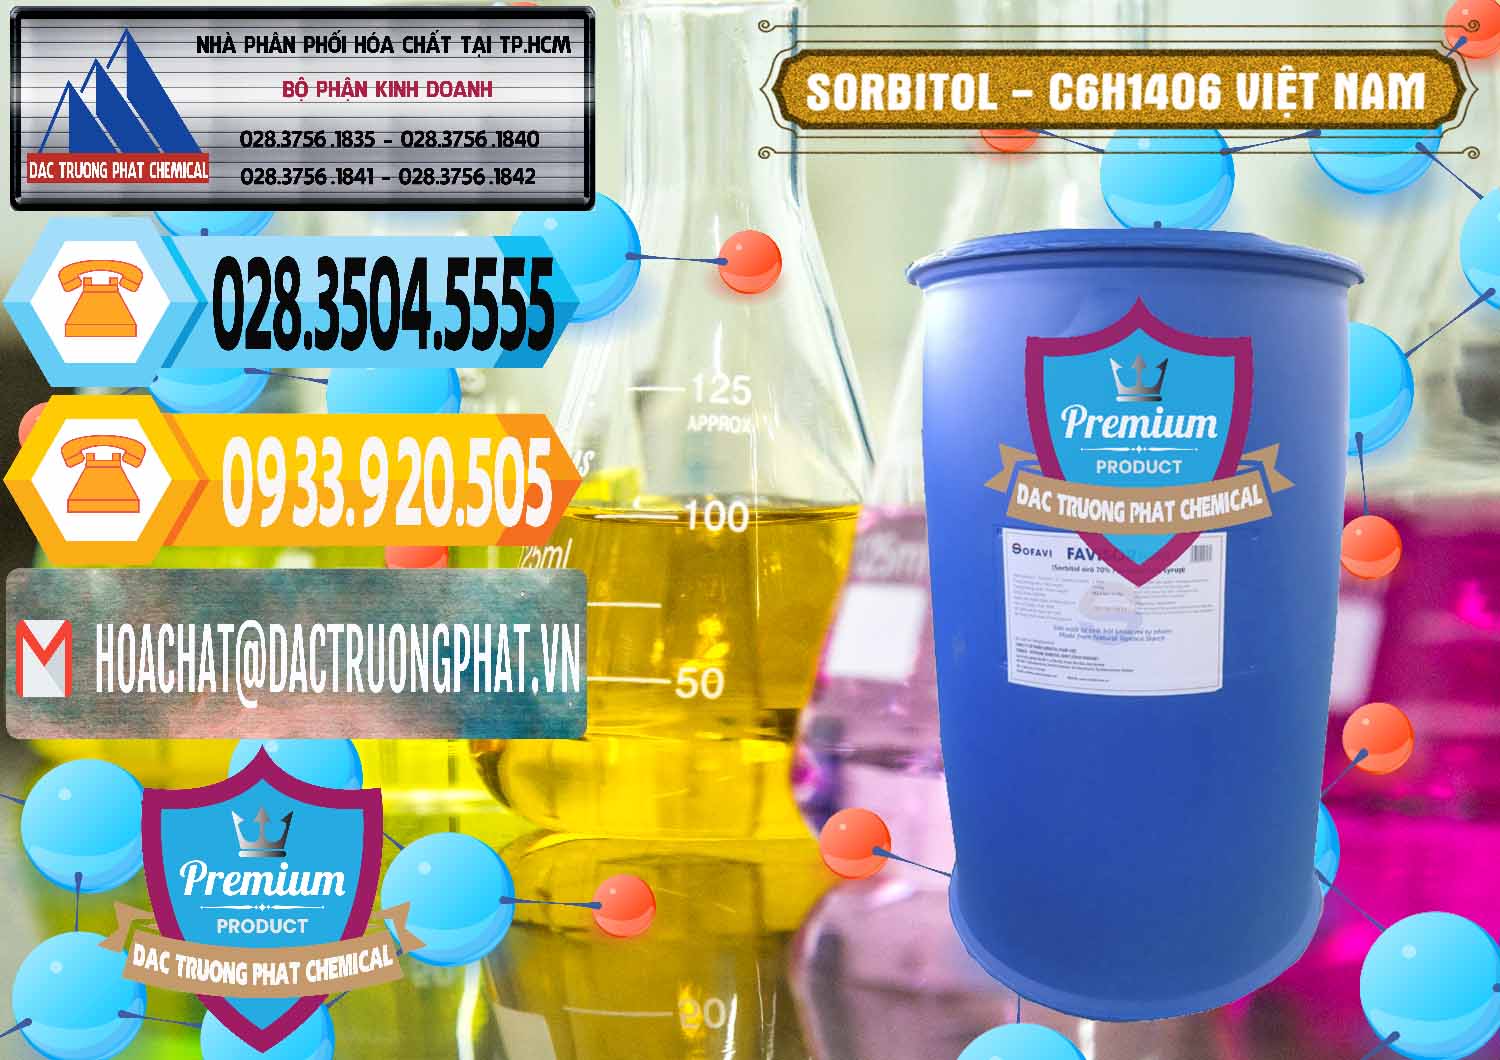 Cty chuyên kinh doanh & cung cấp Sorbitol - C6H14O6 Lỏng 70% Food Grade Việt Nam - 0438 - Cty cung cấp _ bán hóa chất tại TP.HCM - hoachattayrua.net